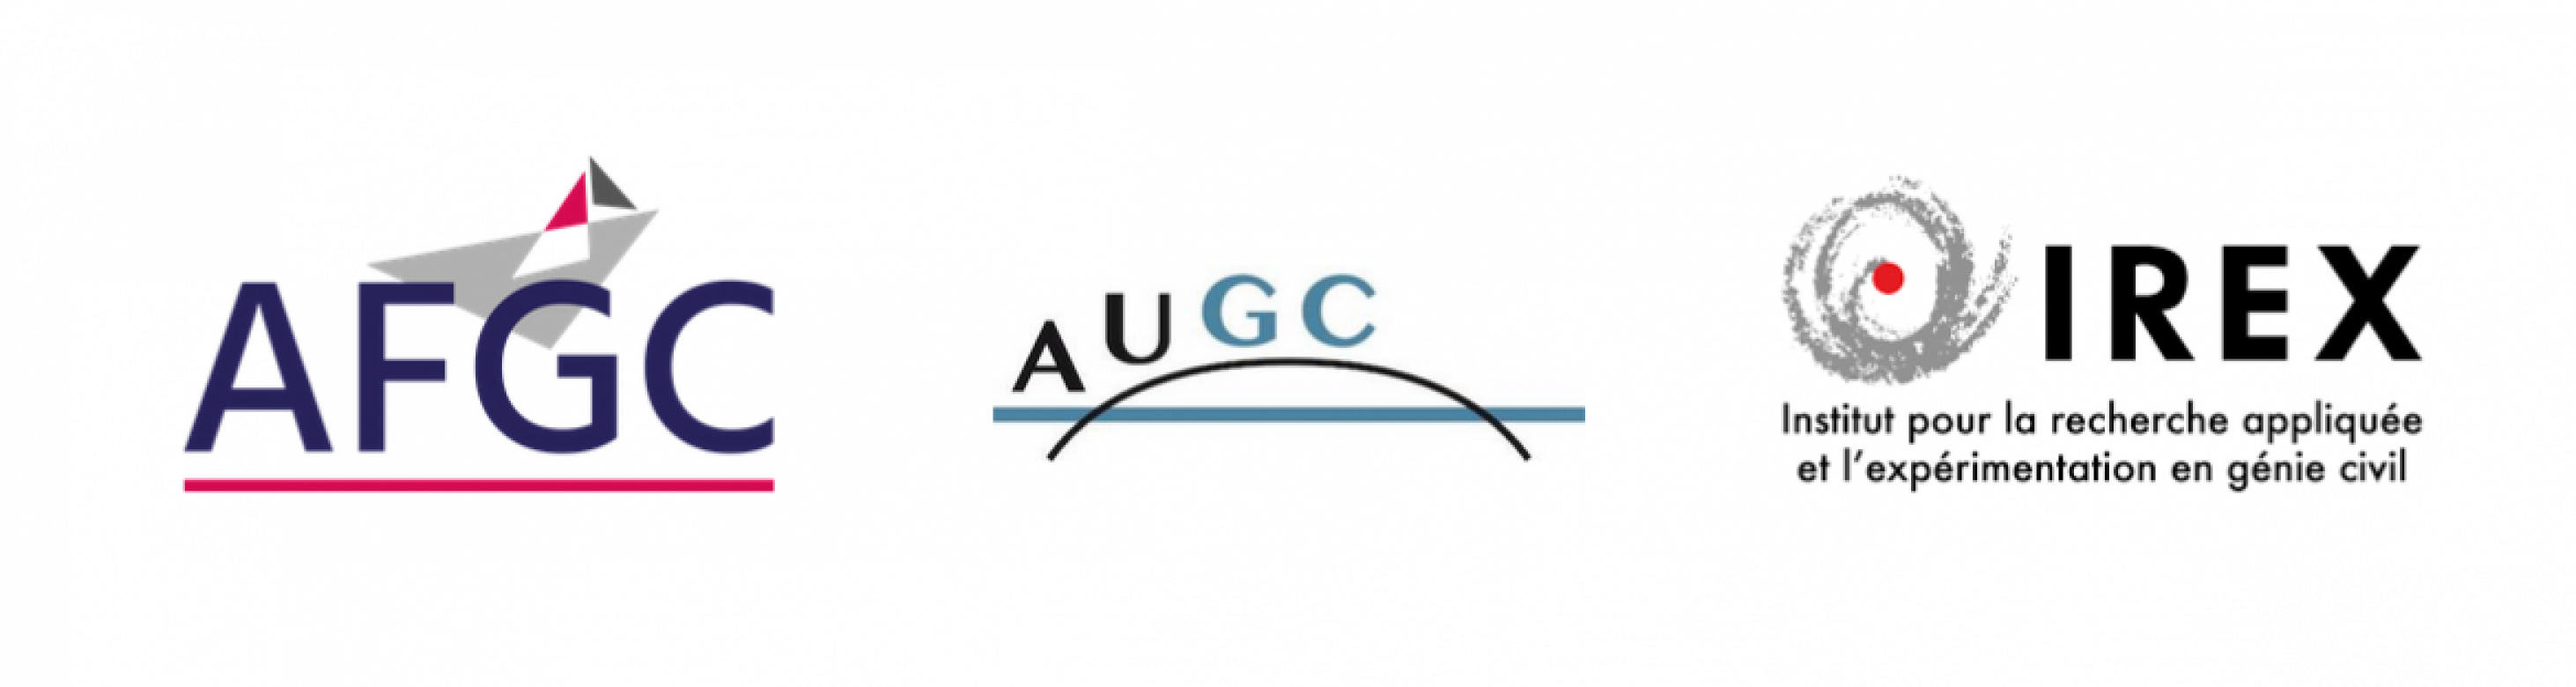 Logo AFGC AUGC IREX